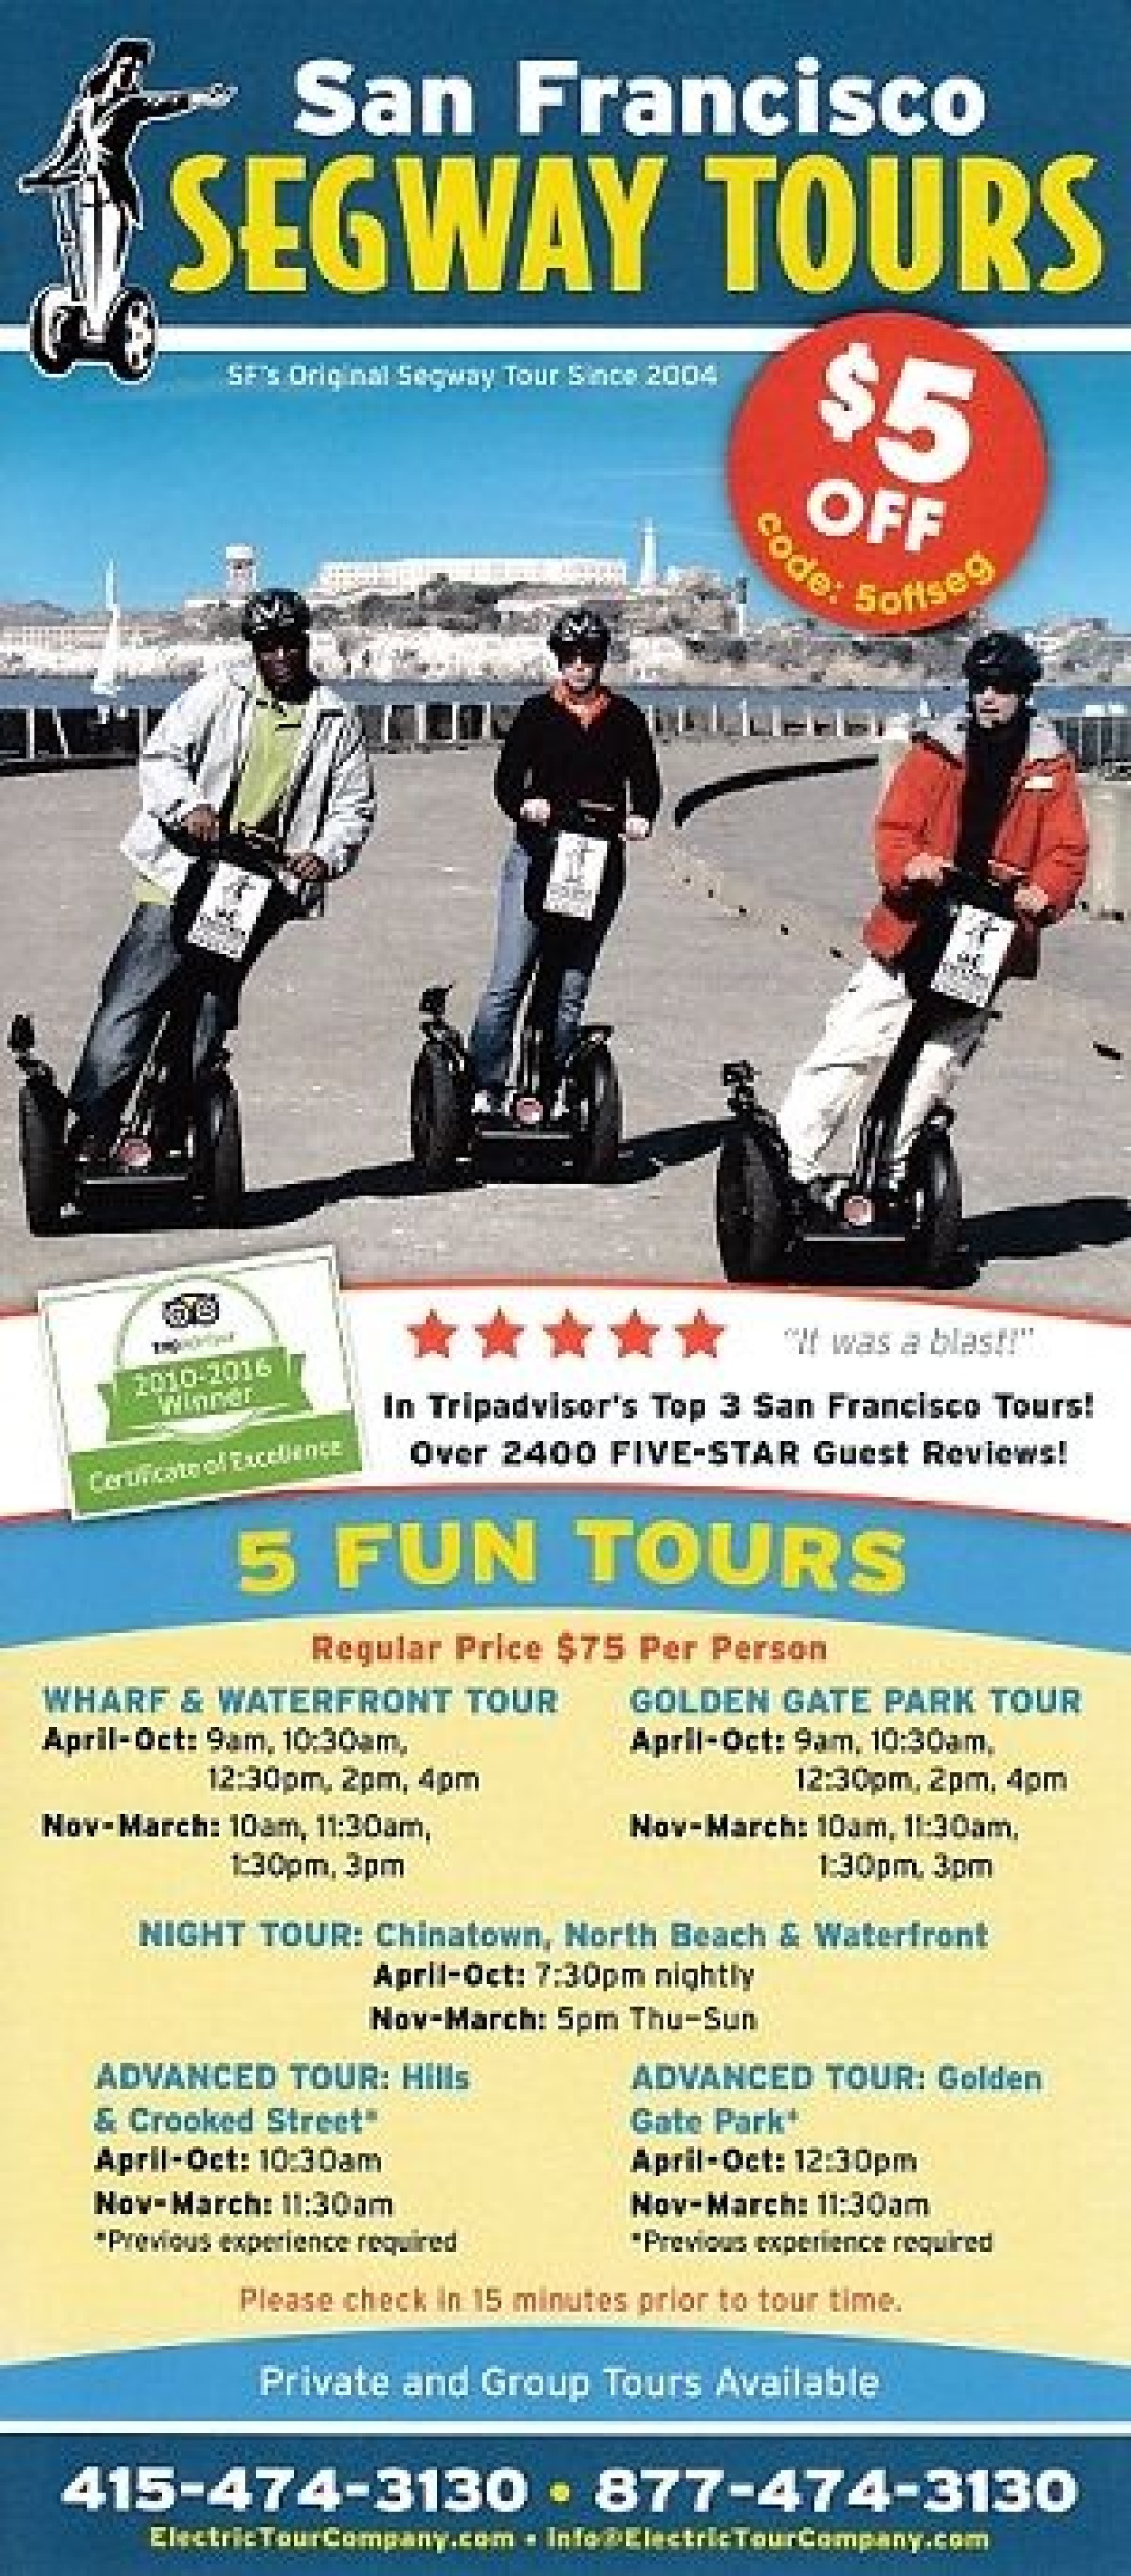 San Francisco Electric Tour Co | Segway Tours- San Francisco | San Francisco, CA ...1250 x 2846